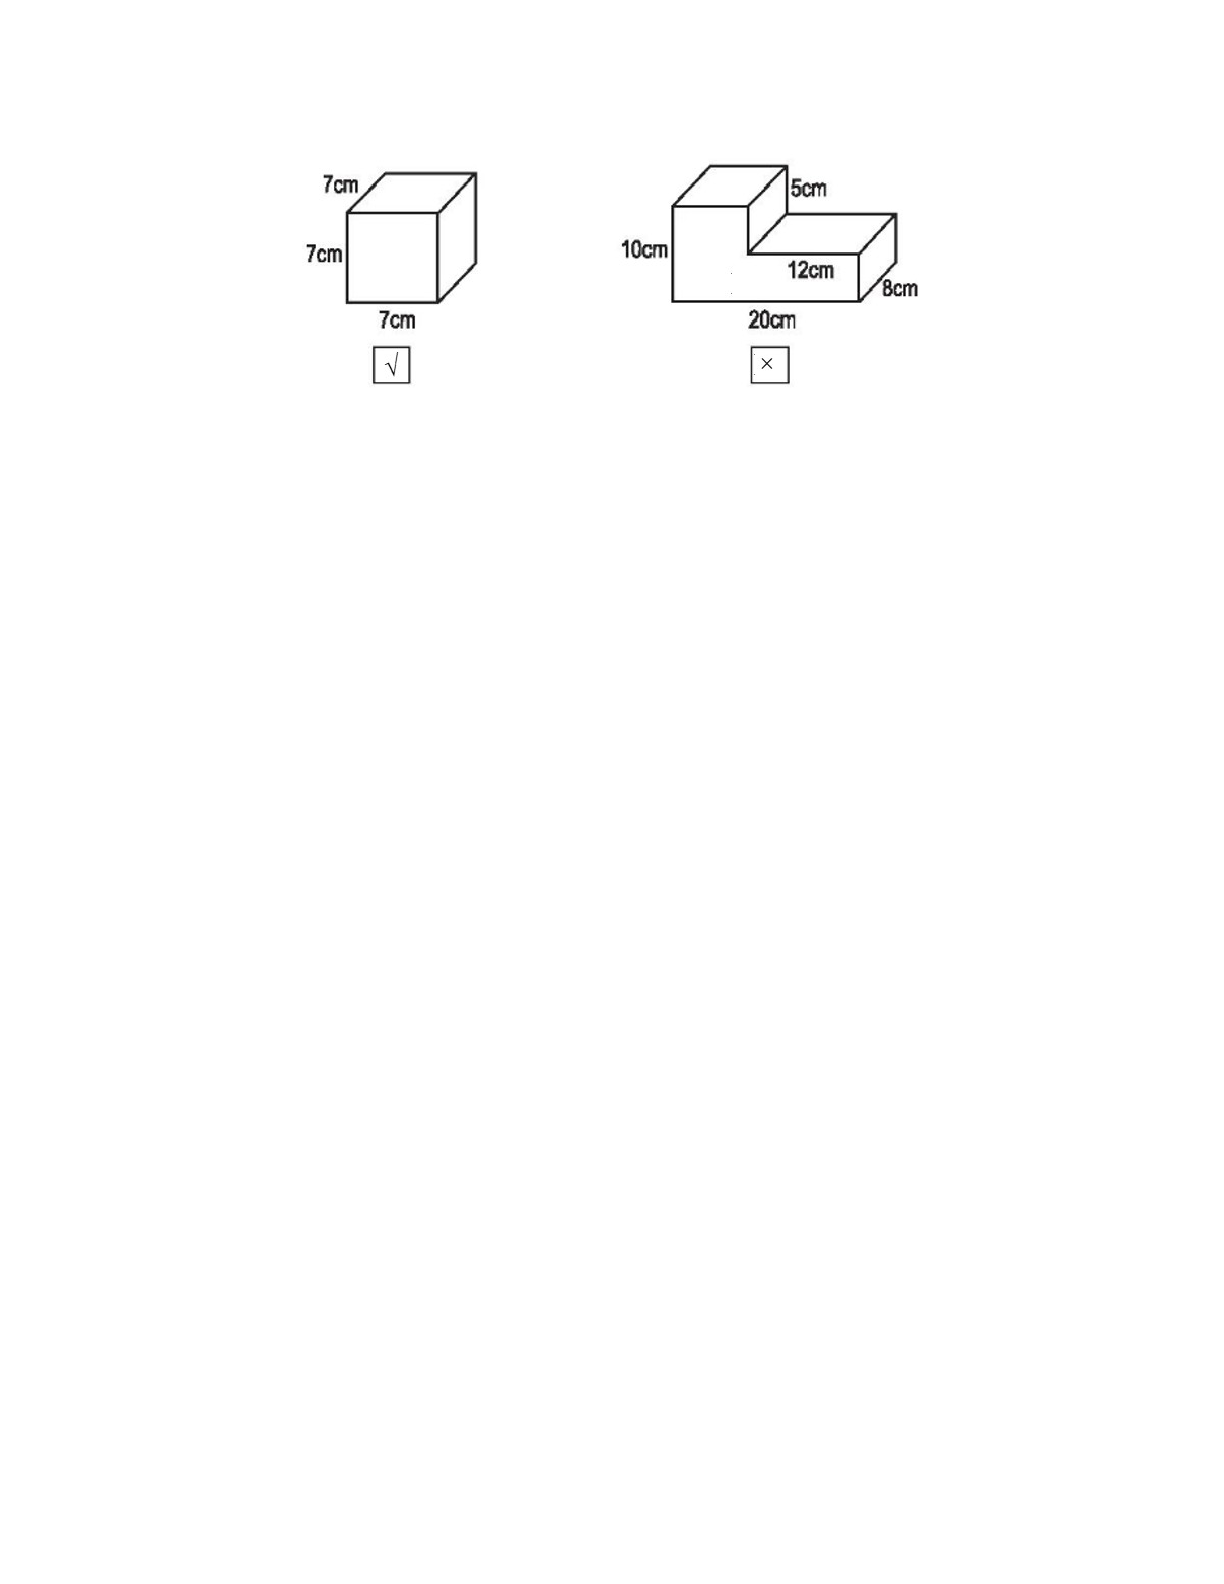 Đánh dấu x vào ô trống đặt dưới hình hộp chữ nhật, đánh dấu √ vào ô trống đặt dưới hình lập phương (trang 2)